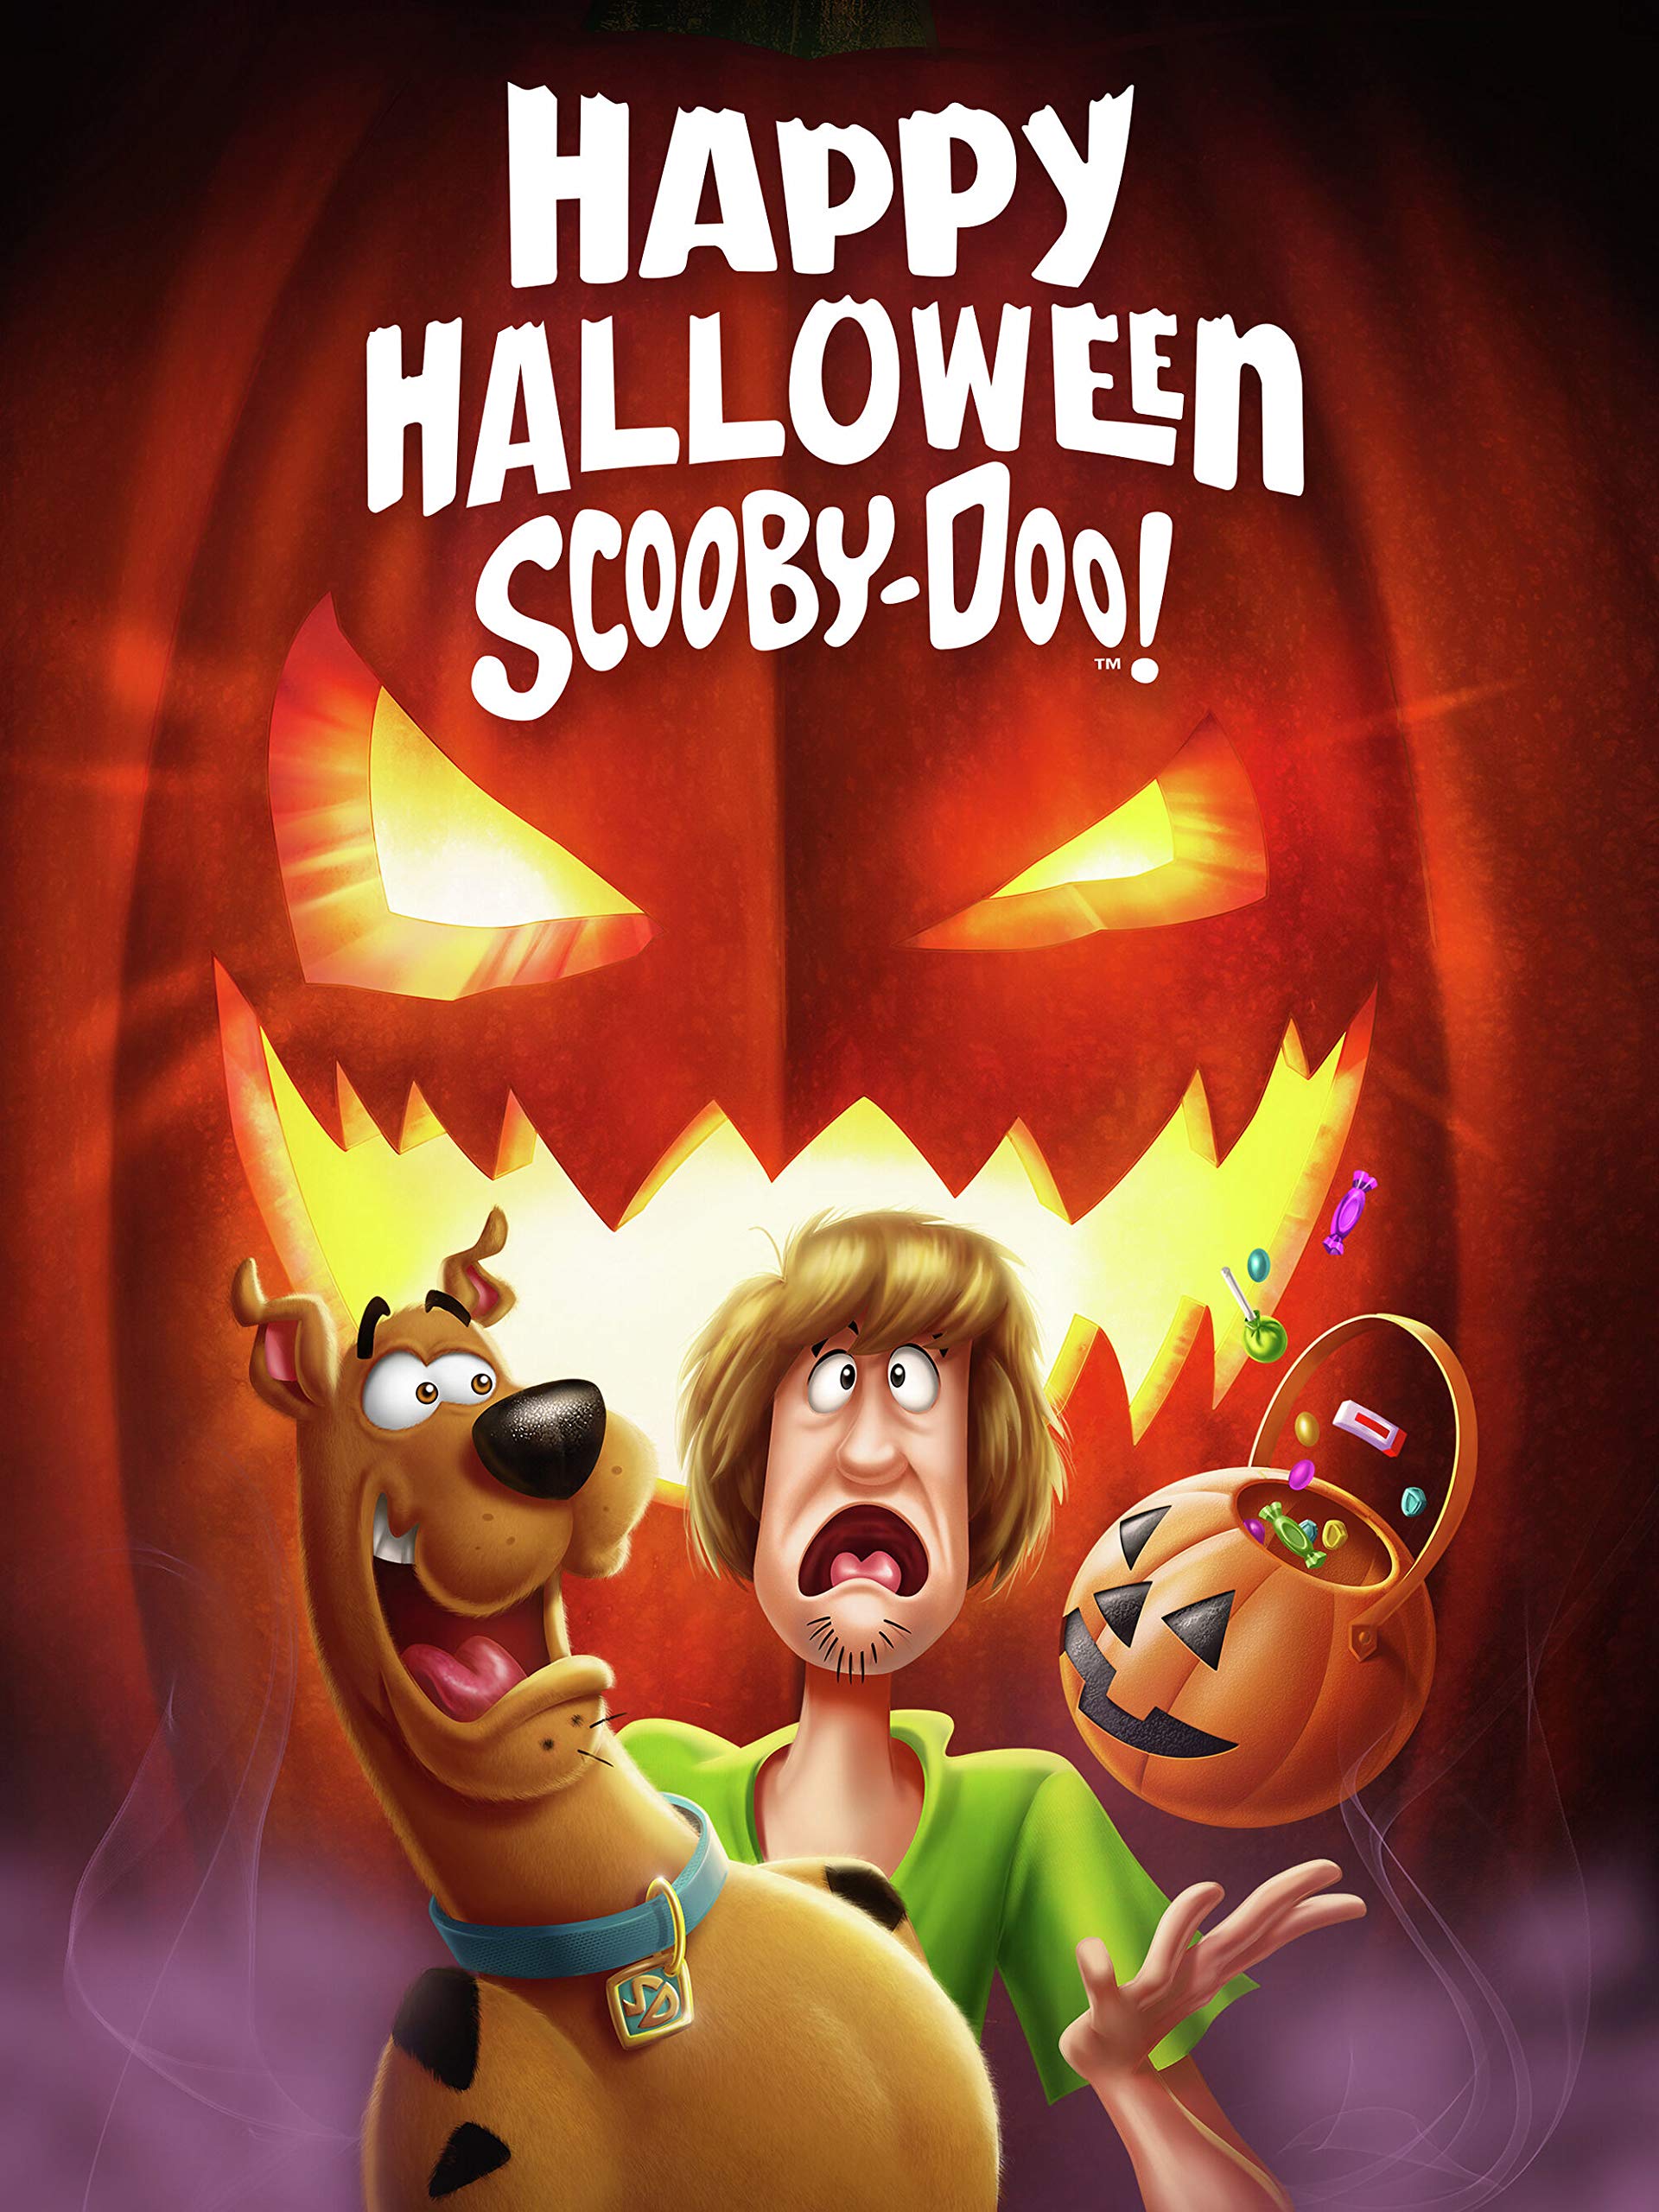 Happy Halloween, Scooby Doo!. Warner Bros. Entertainment